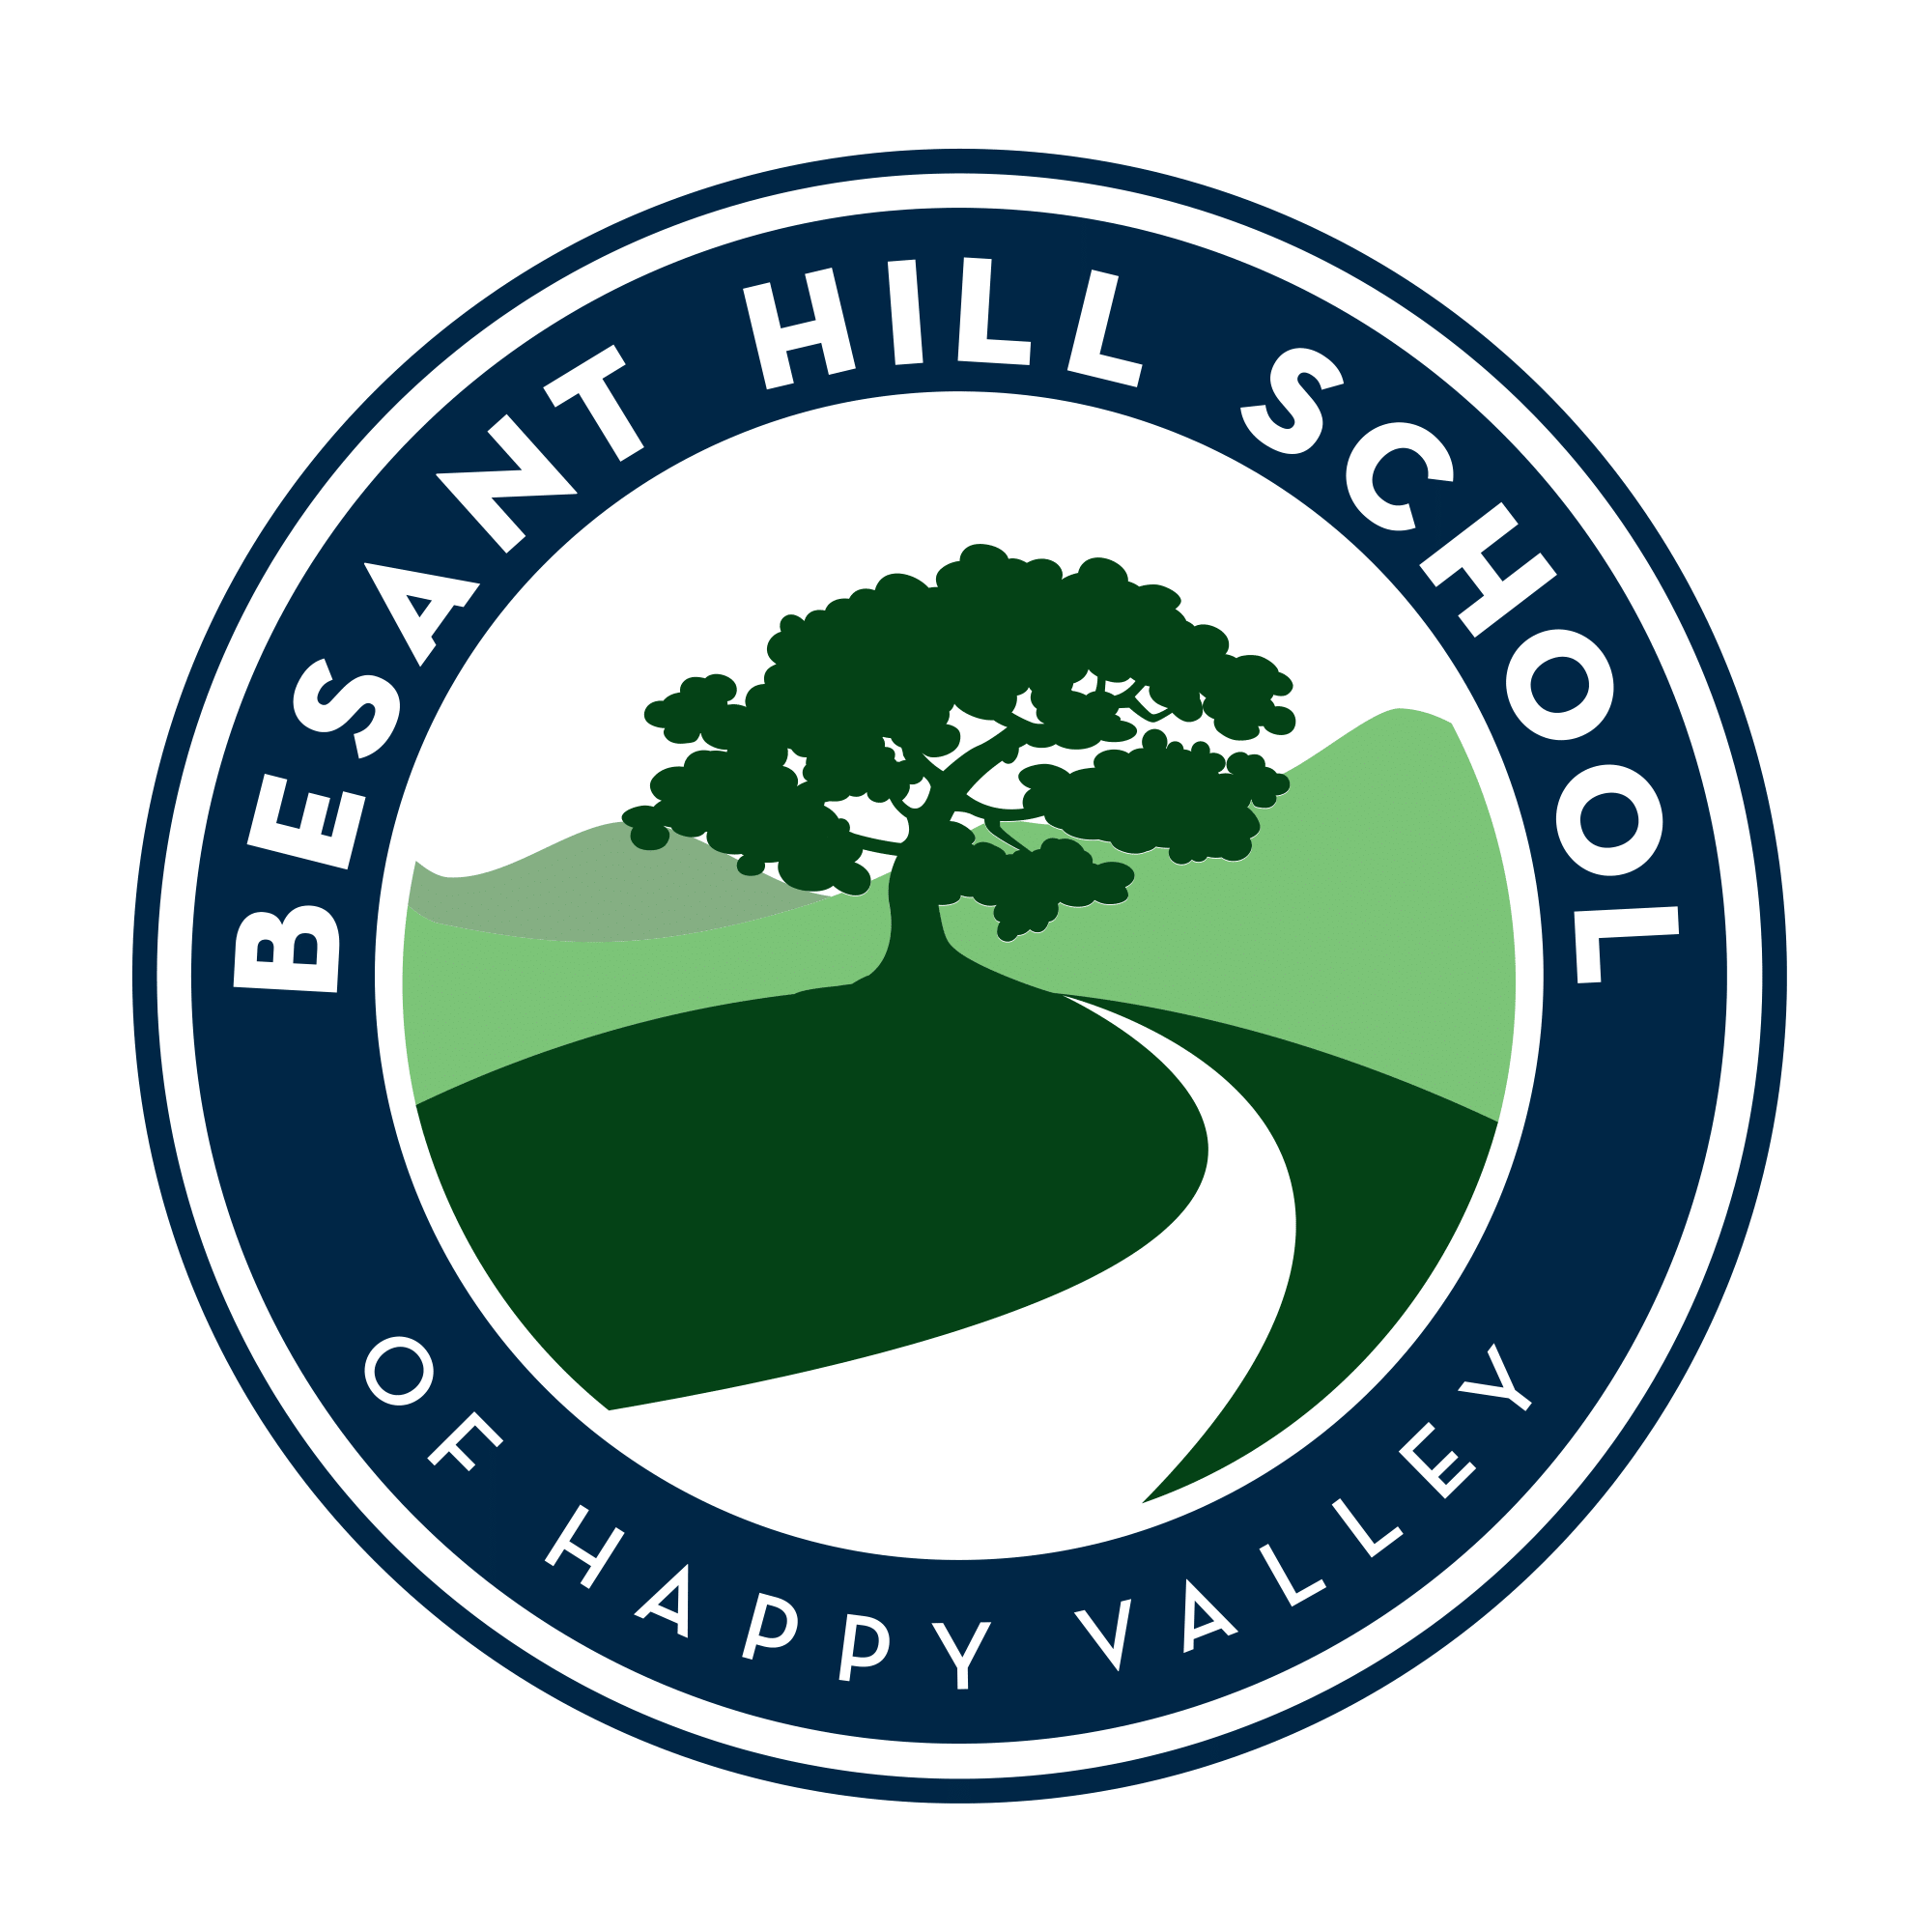 besant hill campus logo-FullColor-RBG-1.png